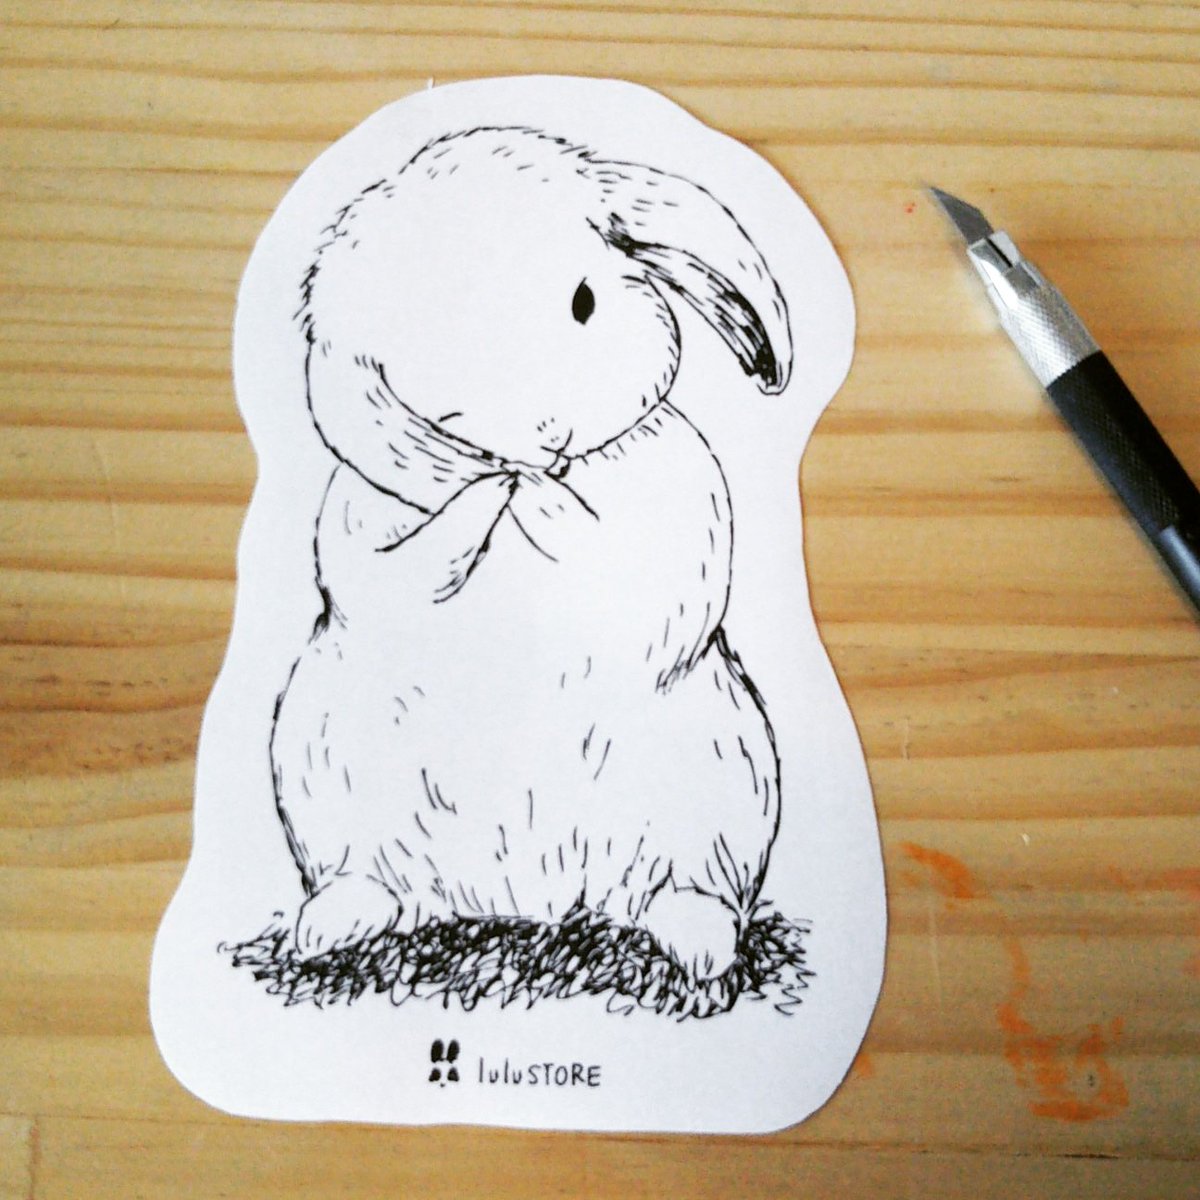 Fululu A Twitter ロップちゃんのイラストで 型抜きカードを作ったら かわいいかなと思ったので やってみました 厚紙に印刷したら かわいいカードになりそうなので ちょっとサンプルを作ってみます うさぎ ロップイヤー うさぎ雑貨 Bunny